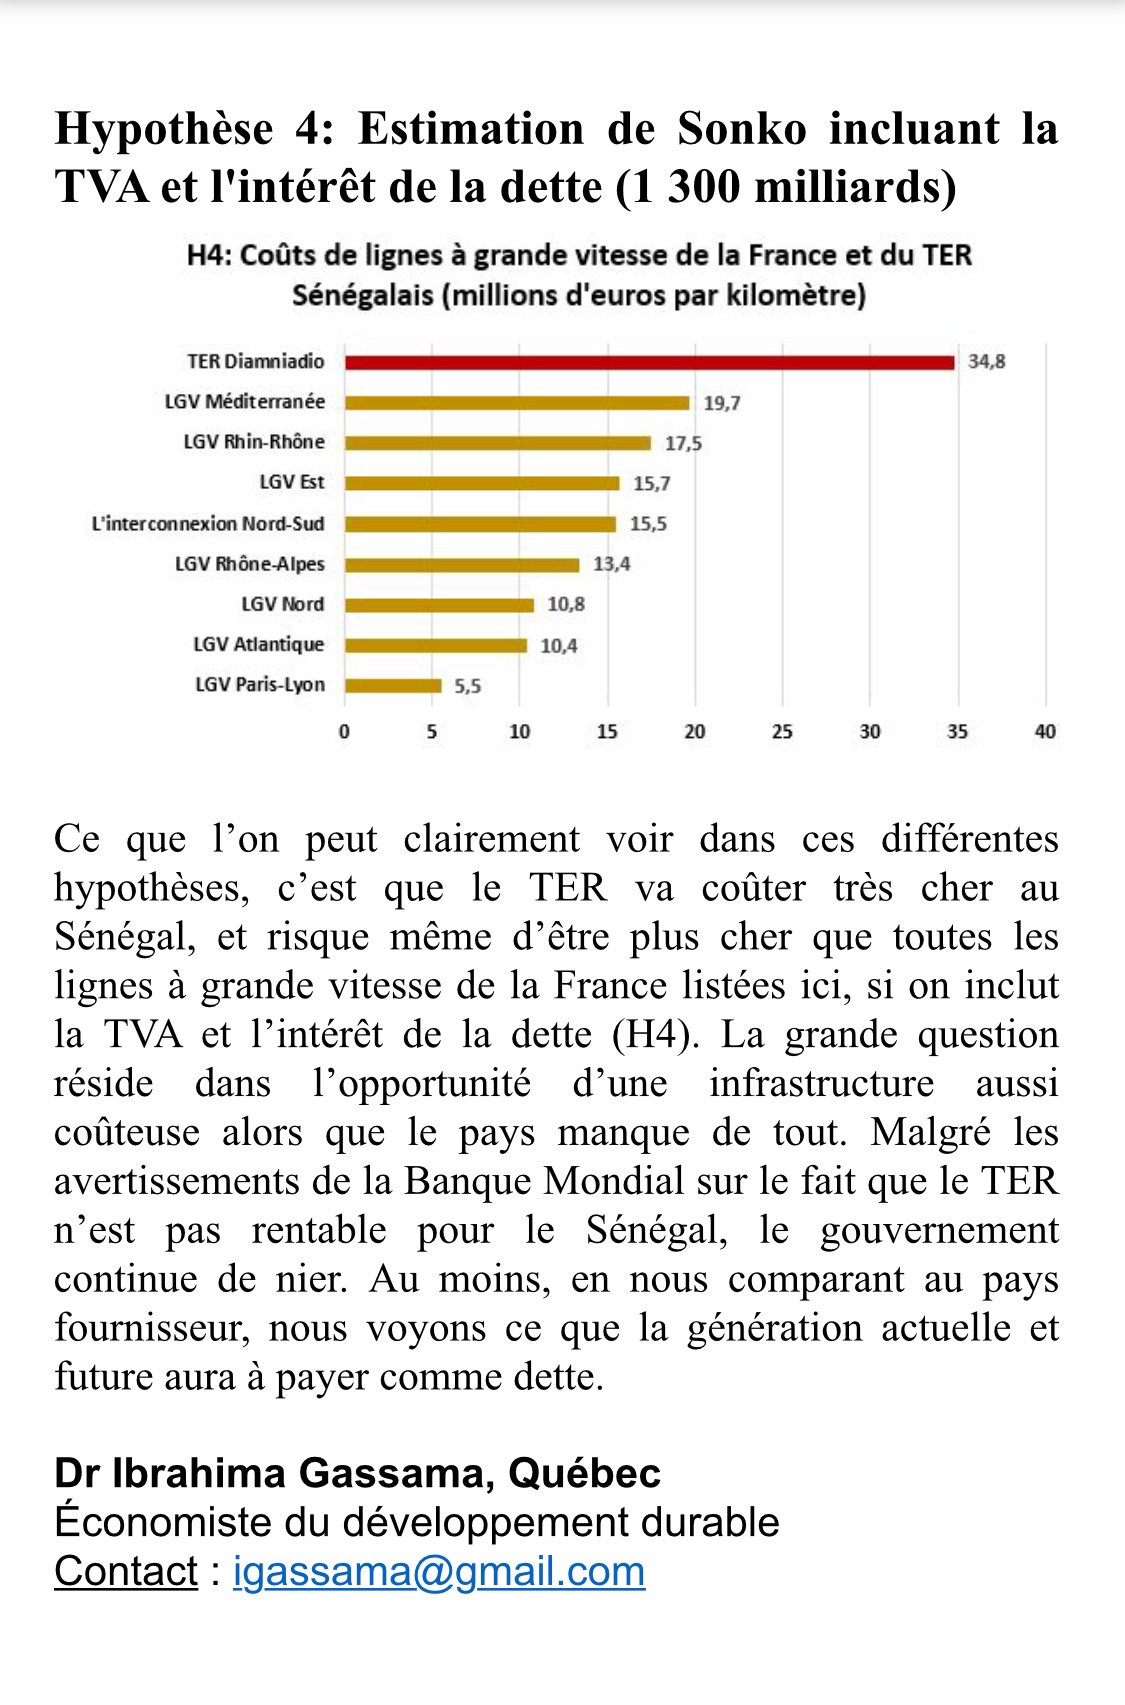 Une comparaison édifiante du TER Sénégalais avec les lignes à grande vitesse de la France (LGV)